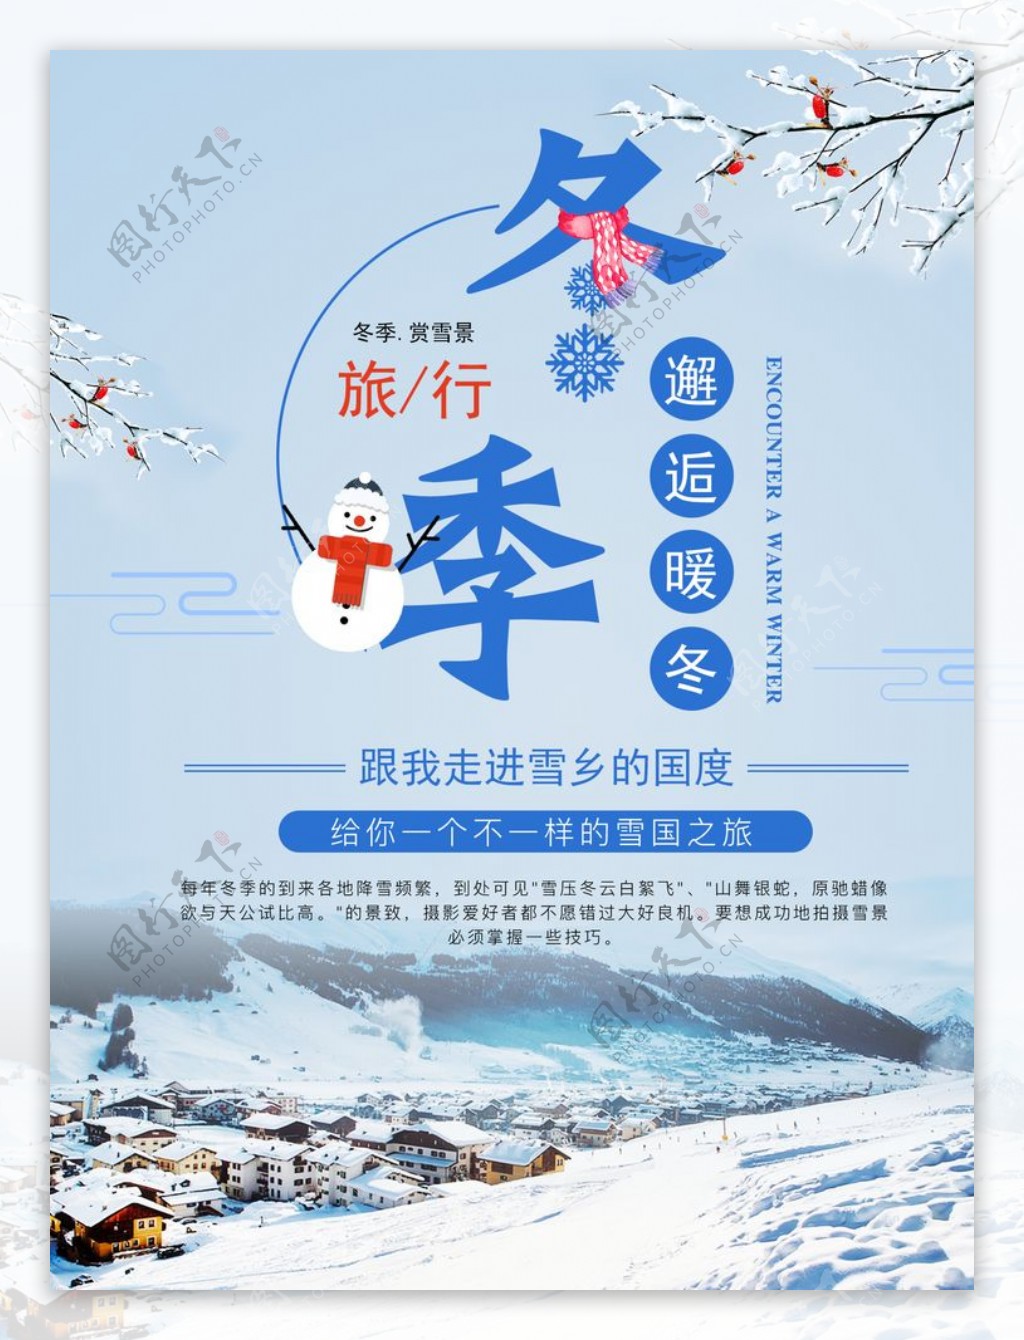 冬季雪乡旅游宣传海报